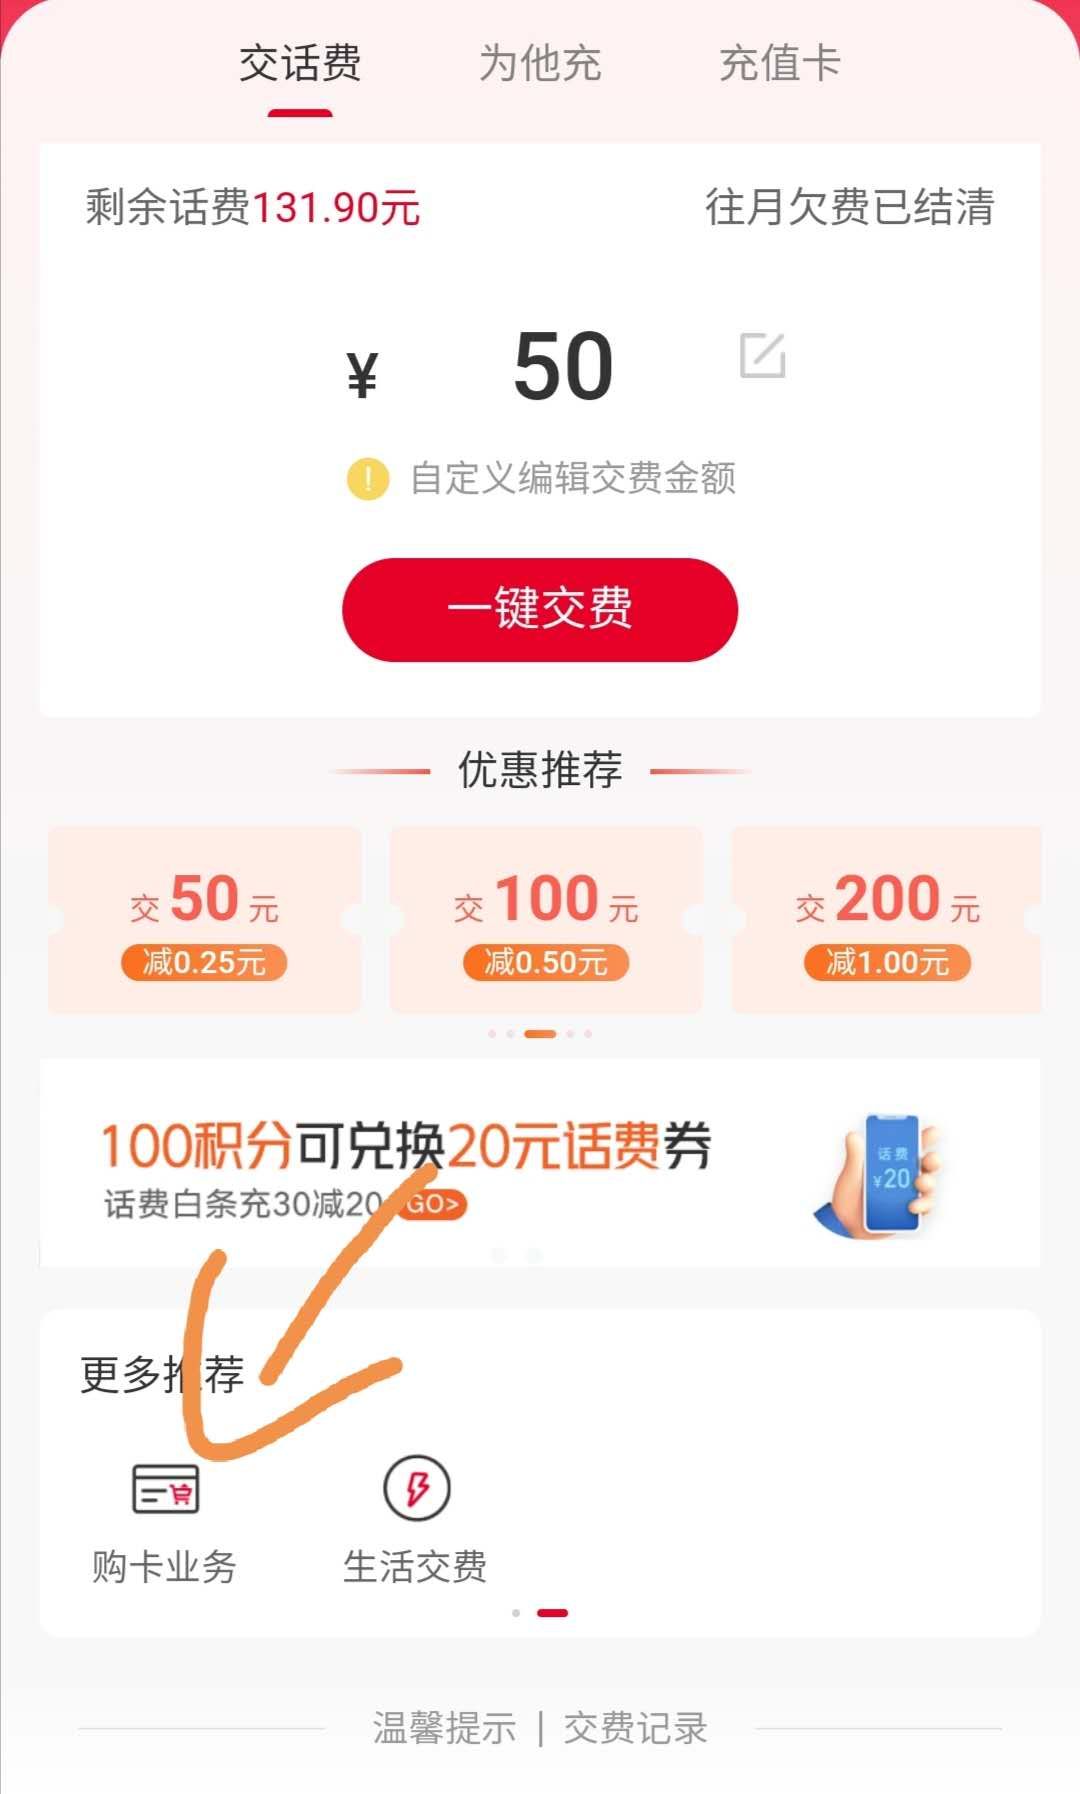 上海联通5折话费又有了 买卡出鱼14毛-惠小助(52huixz.com)